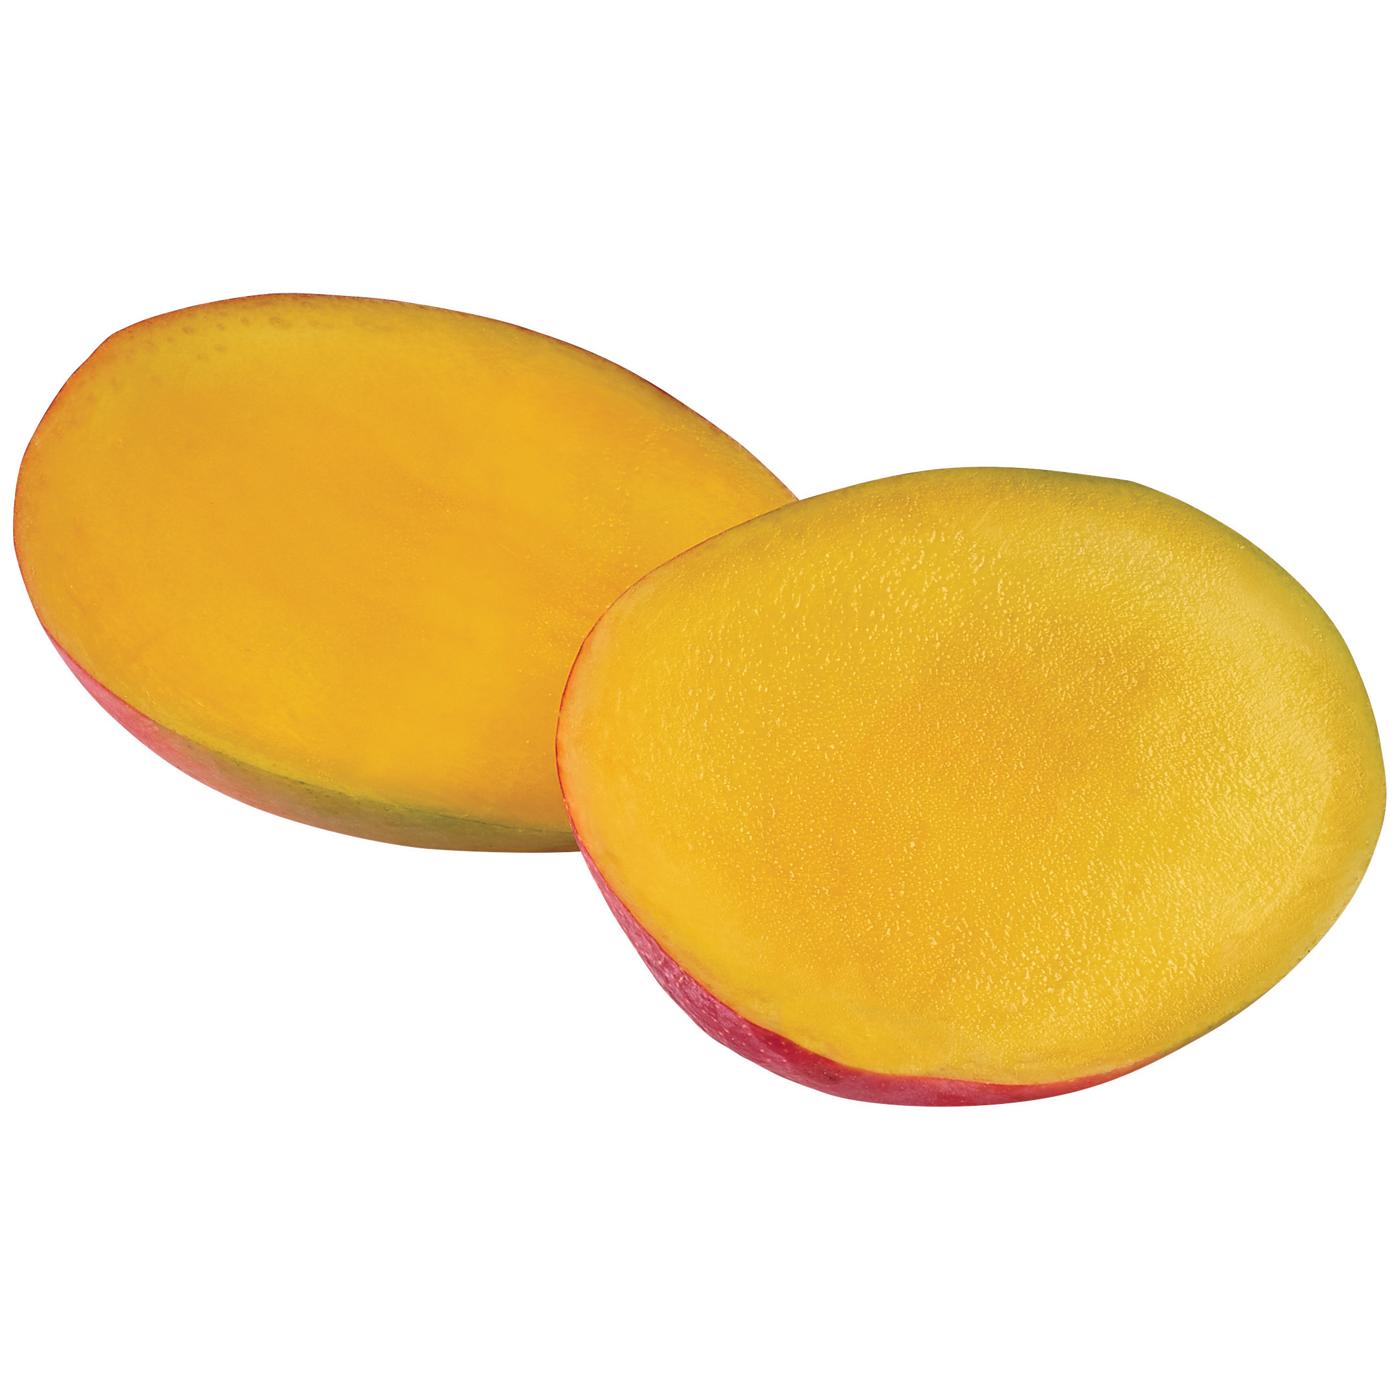 Fresh Large Mango; image 3 of 3